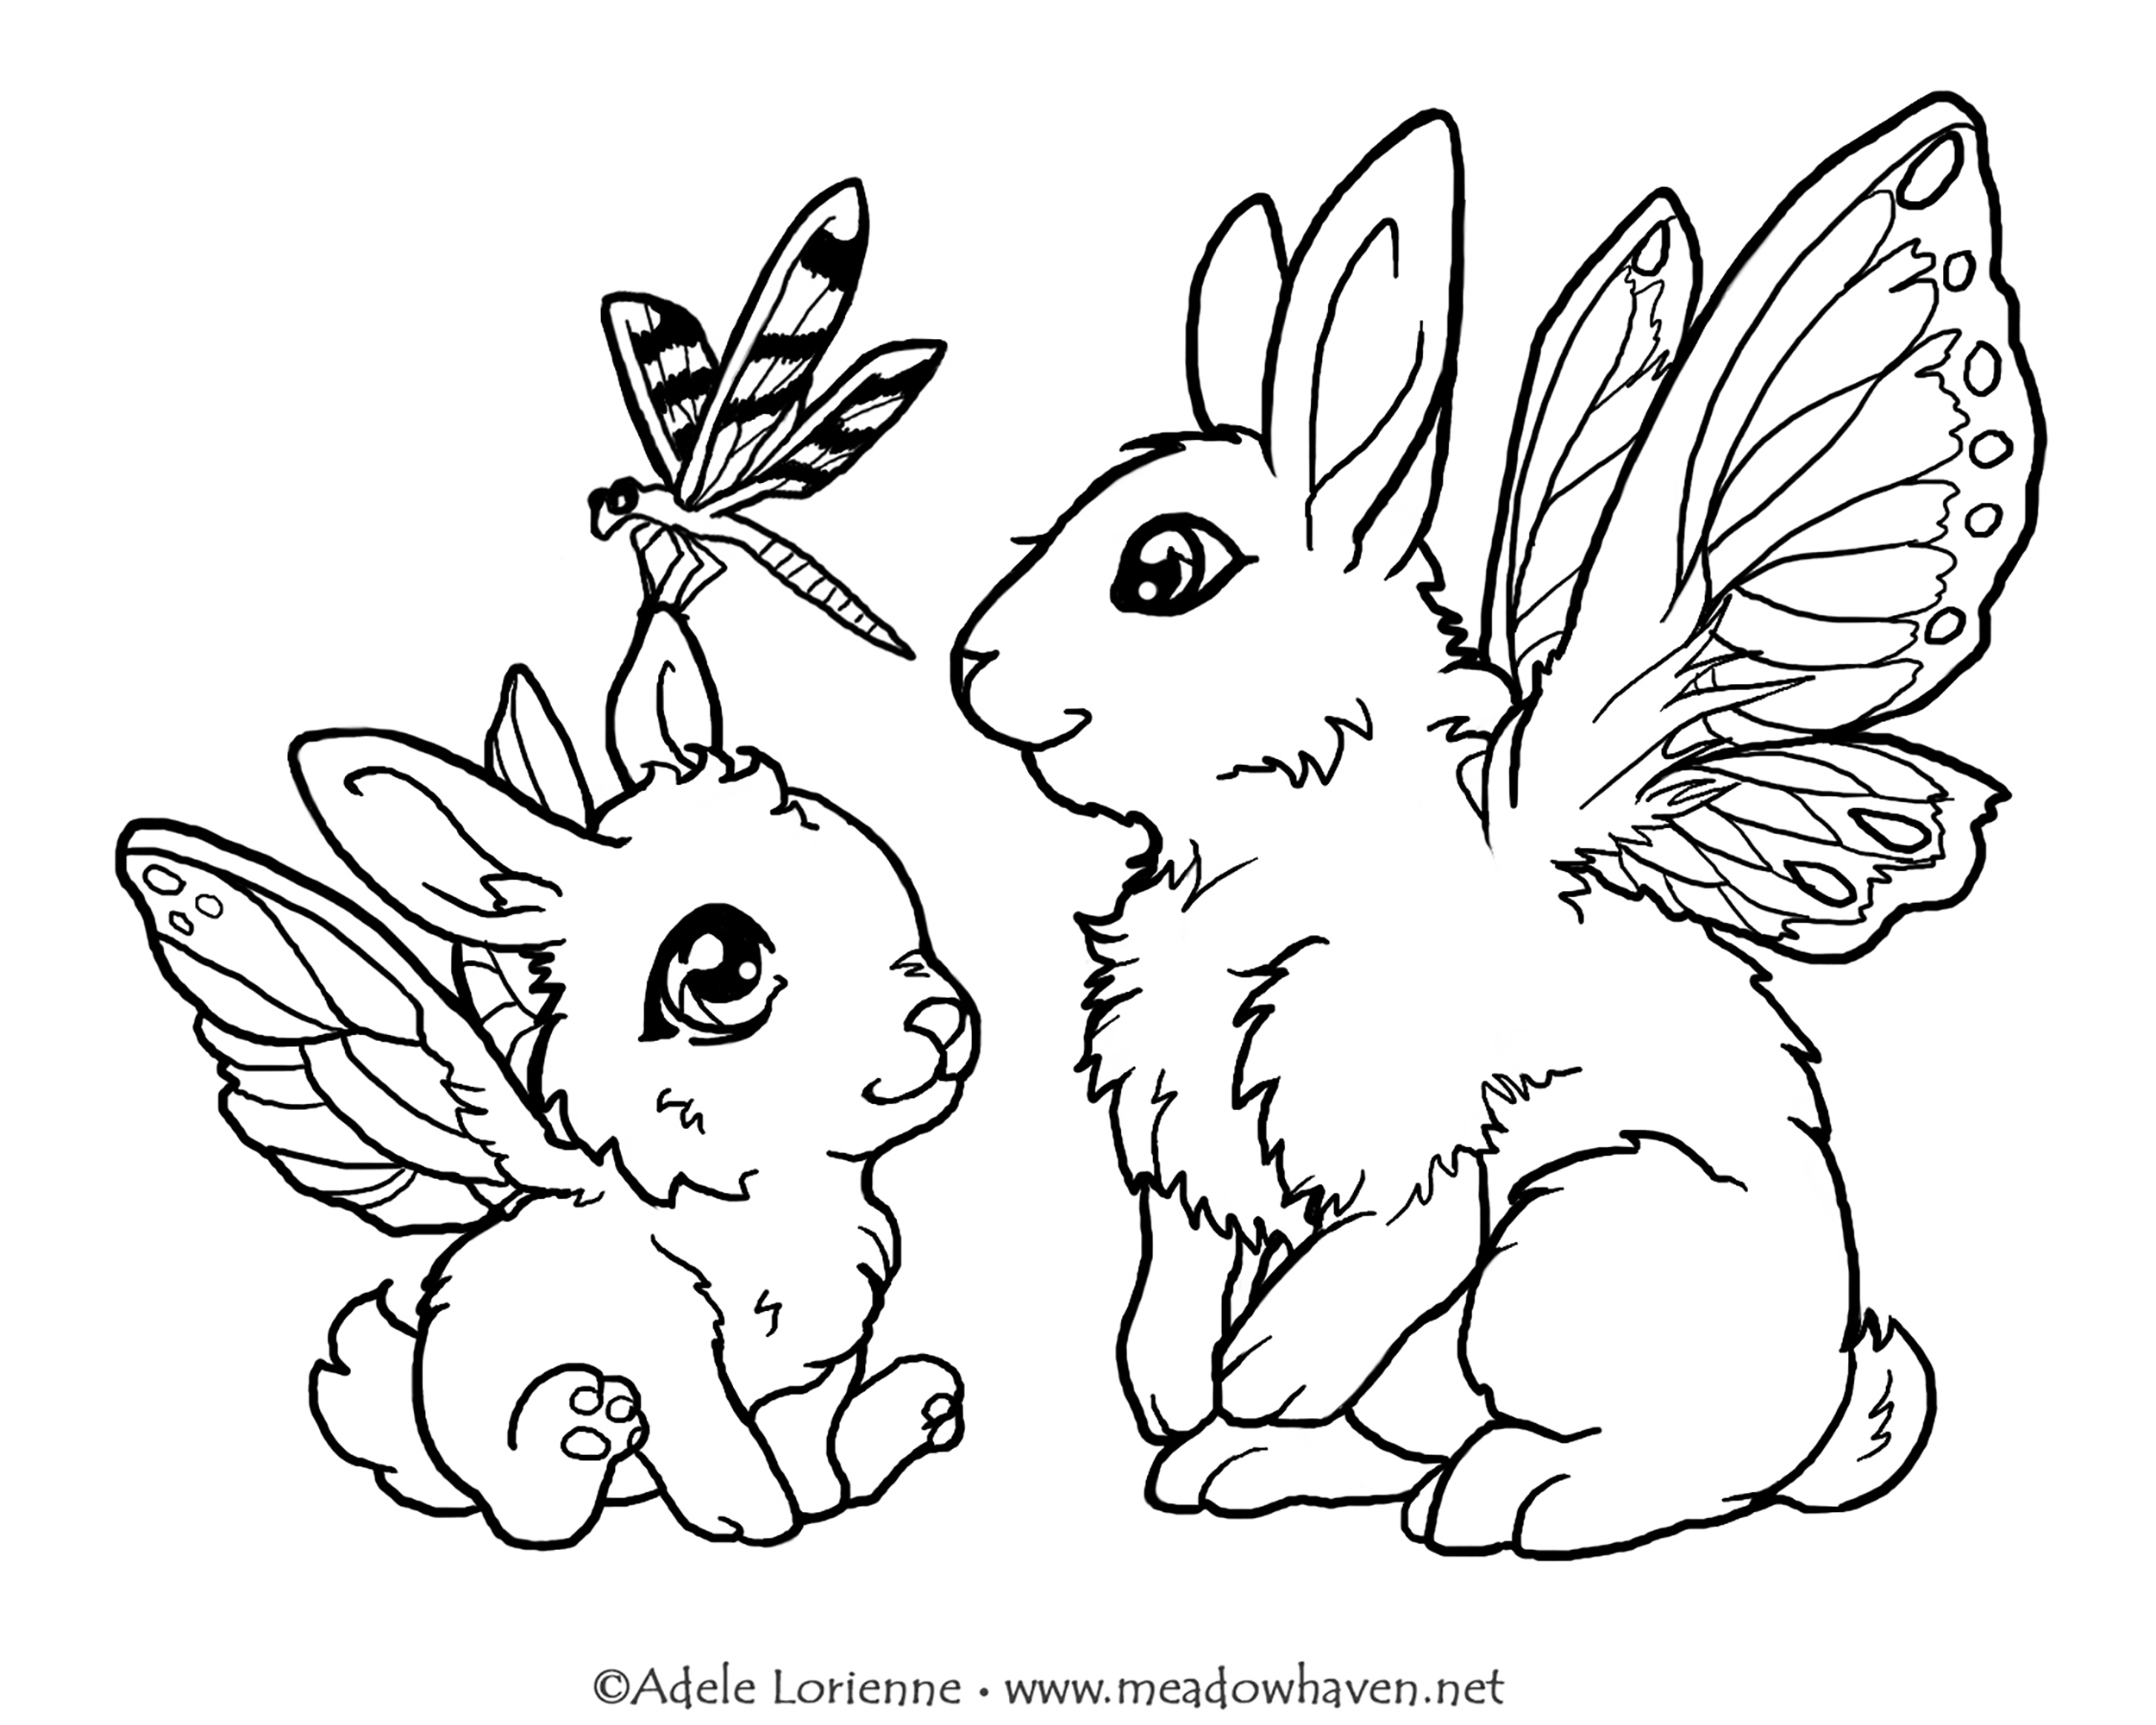 Ces petits lapins vous montrerons comment voler comme une libellule si vous les coloriez !, Artiste : Meadowhaven